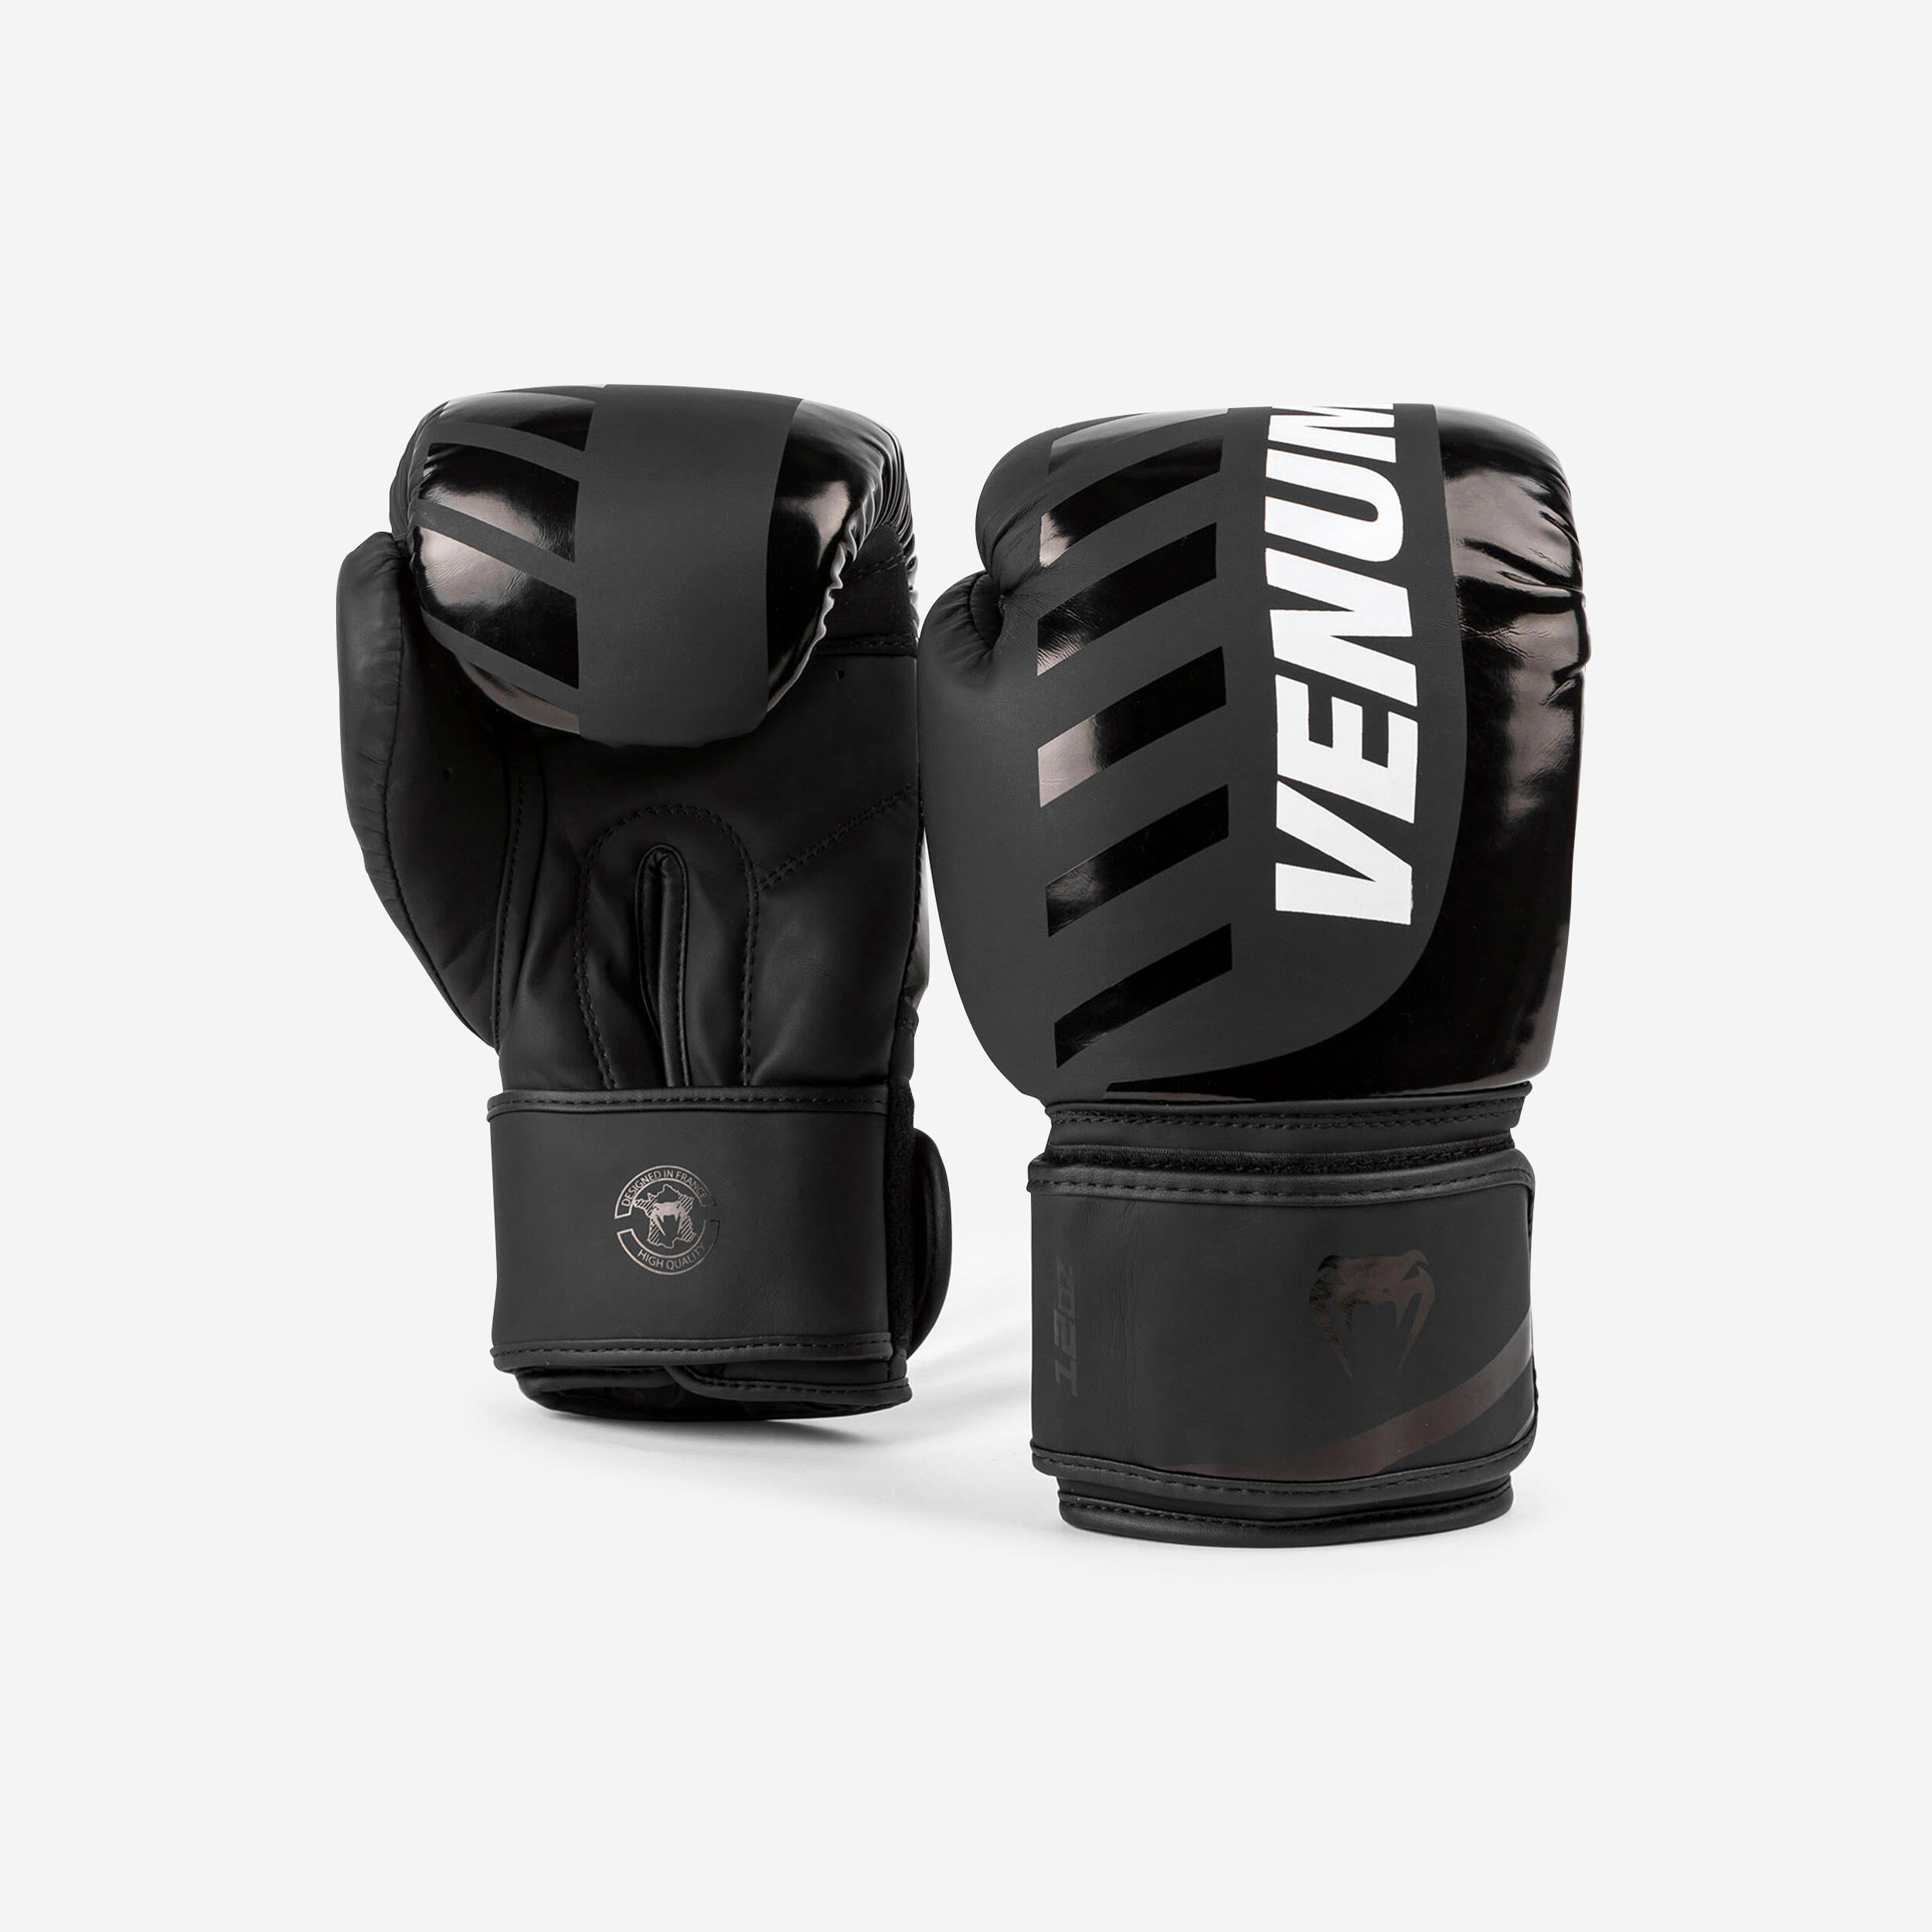 Discover 160+ boxing bag and gloves decathlon - xkldase.edu.vn